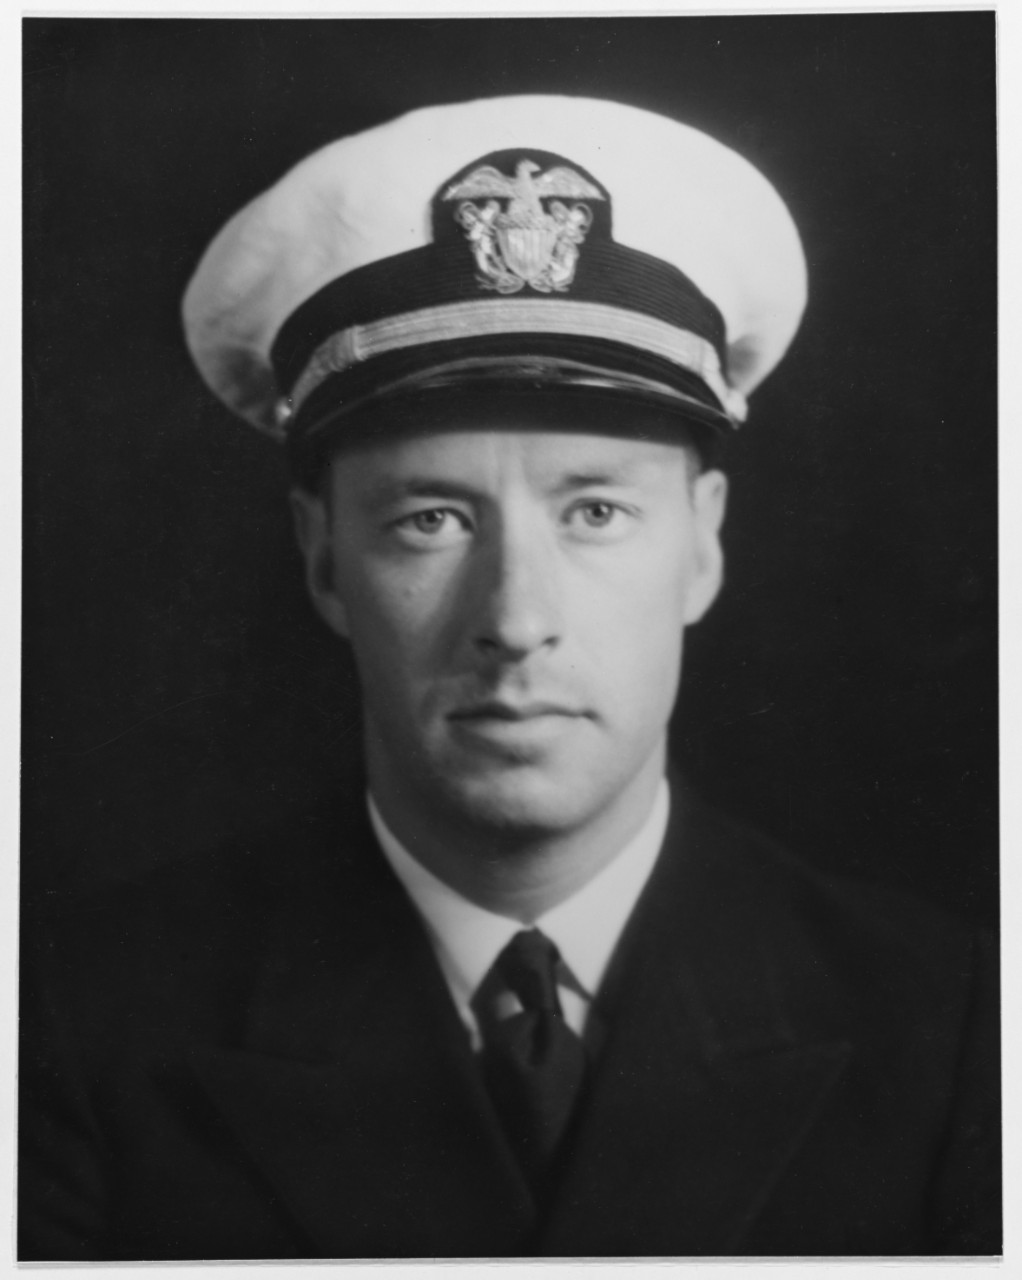 Lieutenant Jack C. Richardson, USN